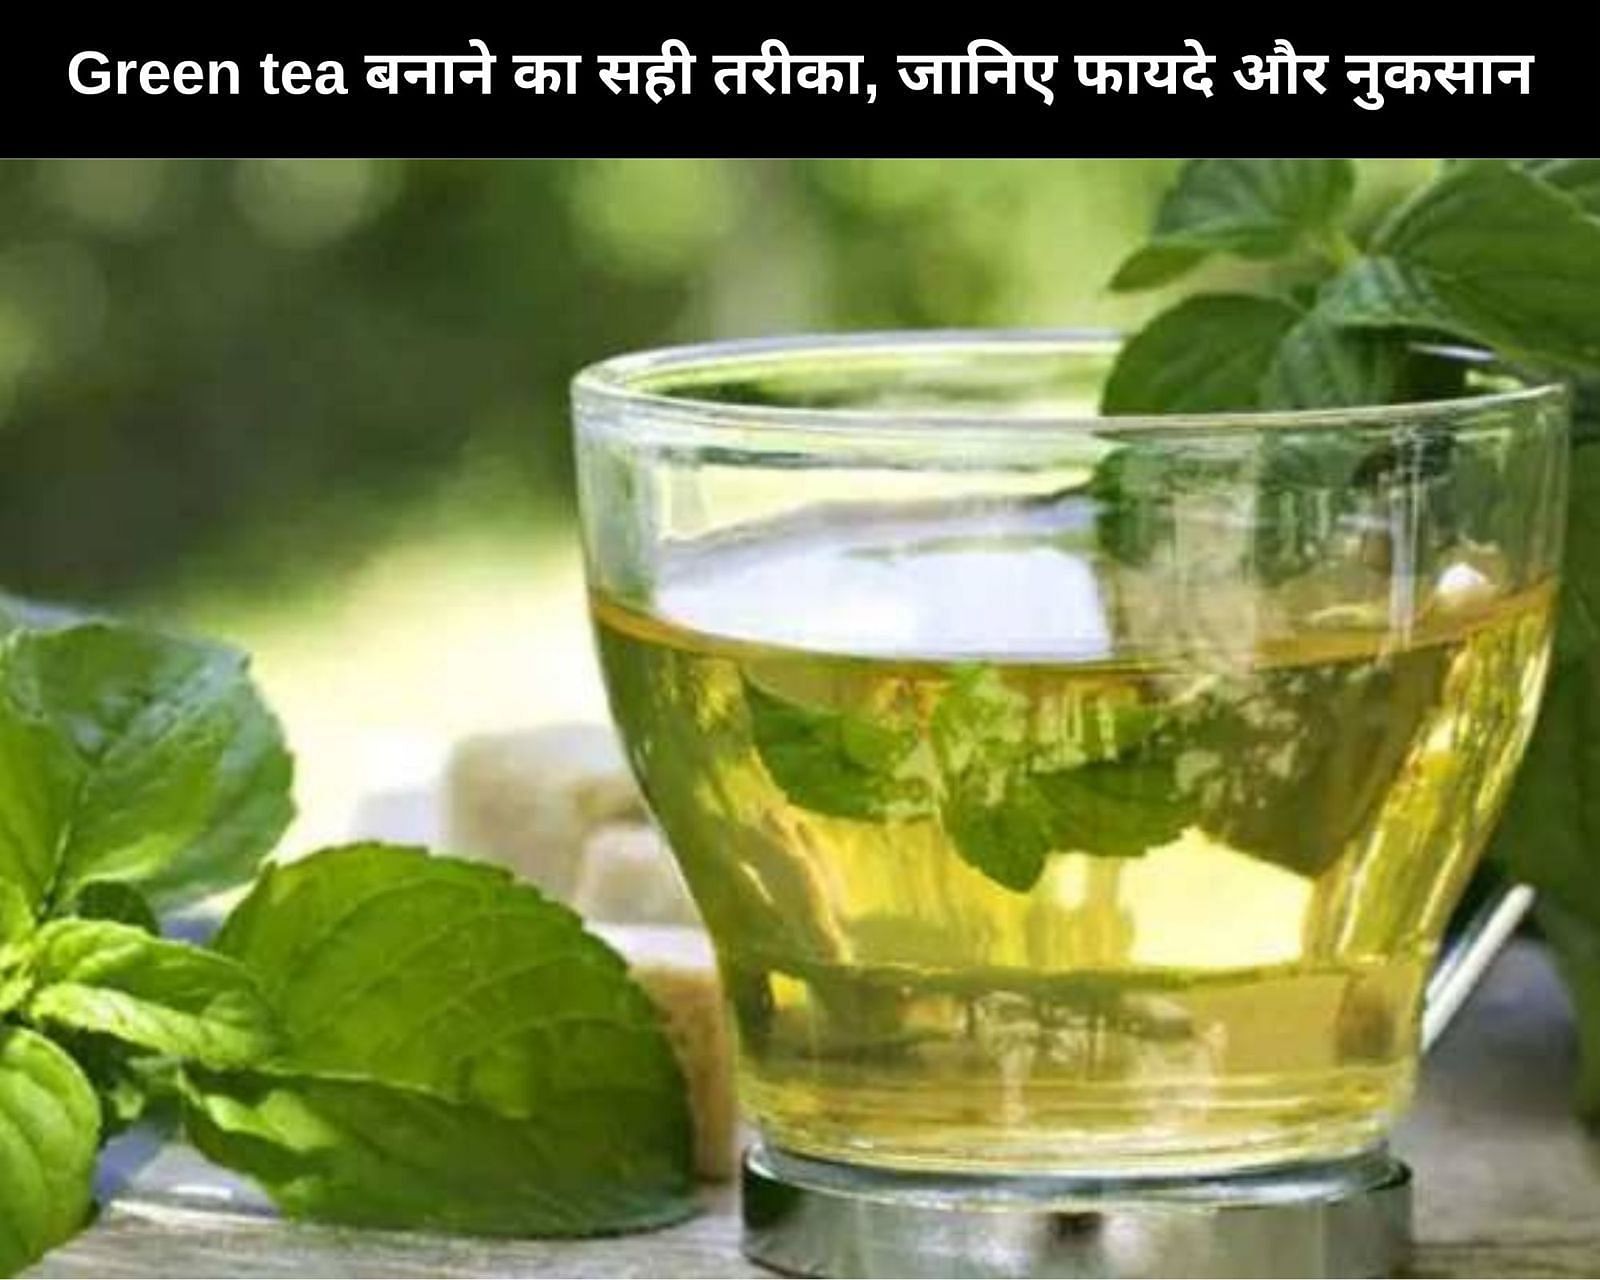 Green tea बनाने का सही तरीका, जानिए 4 फायदे और 4 नुकसान (फोटो - sportskeedaहिन्दी)